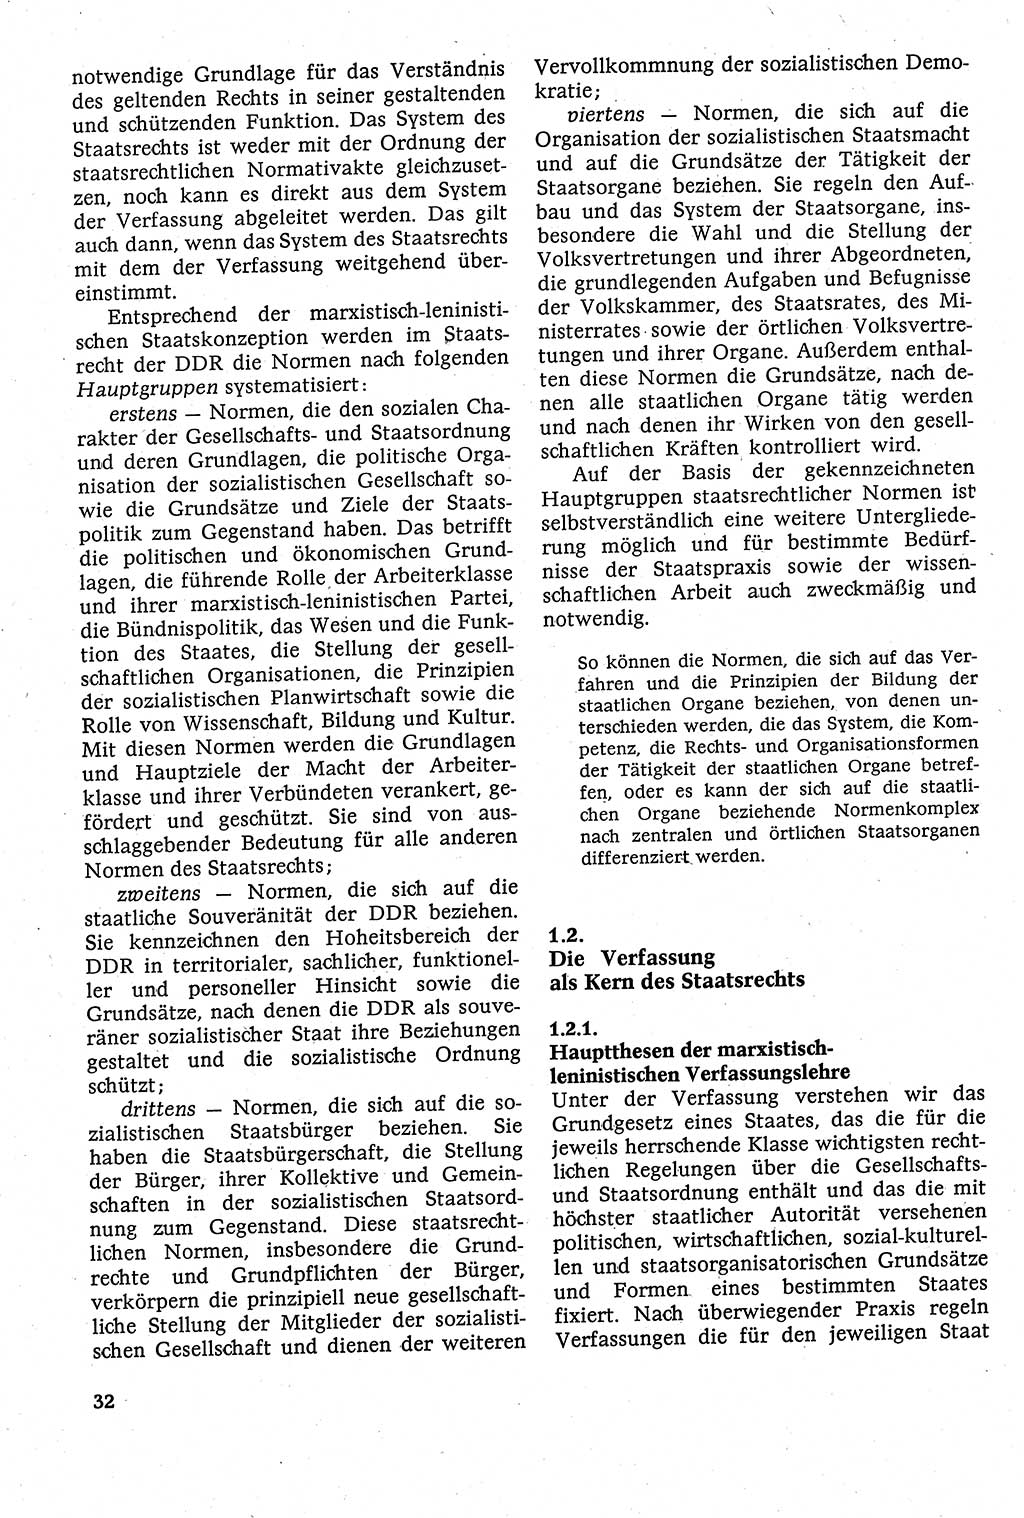 Staatsrecht der DDR [Deutsche Demokratische Republik (DDR)], Lehrbuch 1984, Seite 32 (St.-R. DDR Lb. 1984, S. 32)